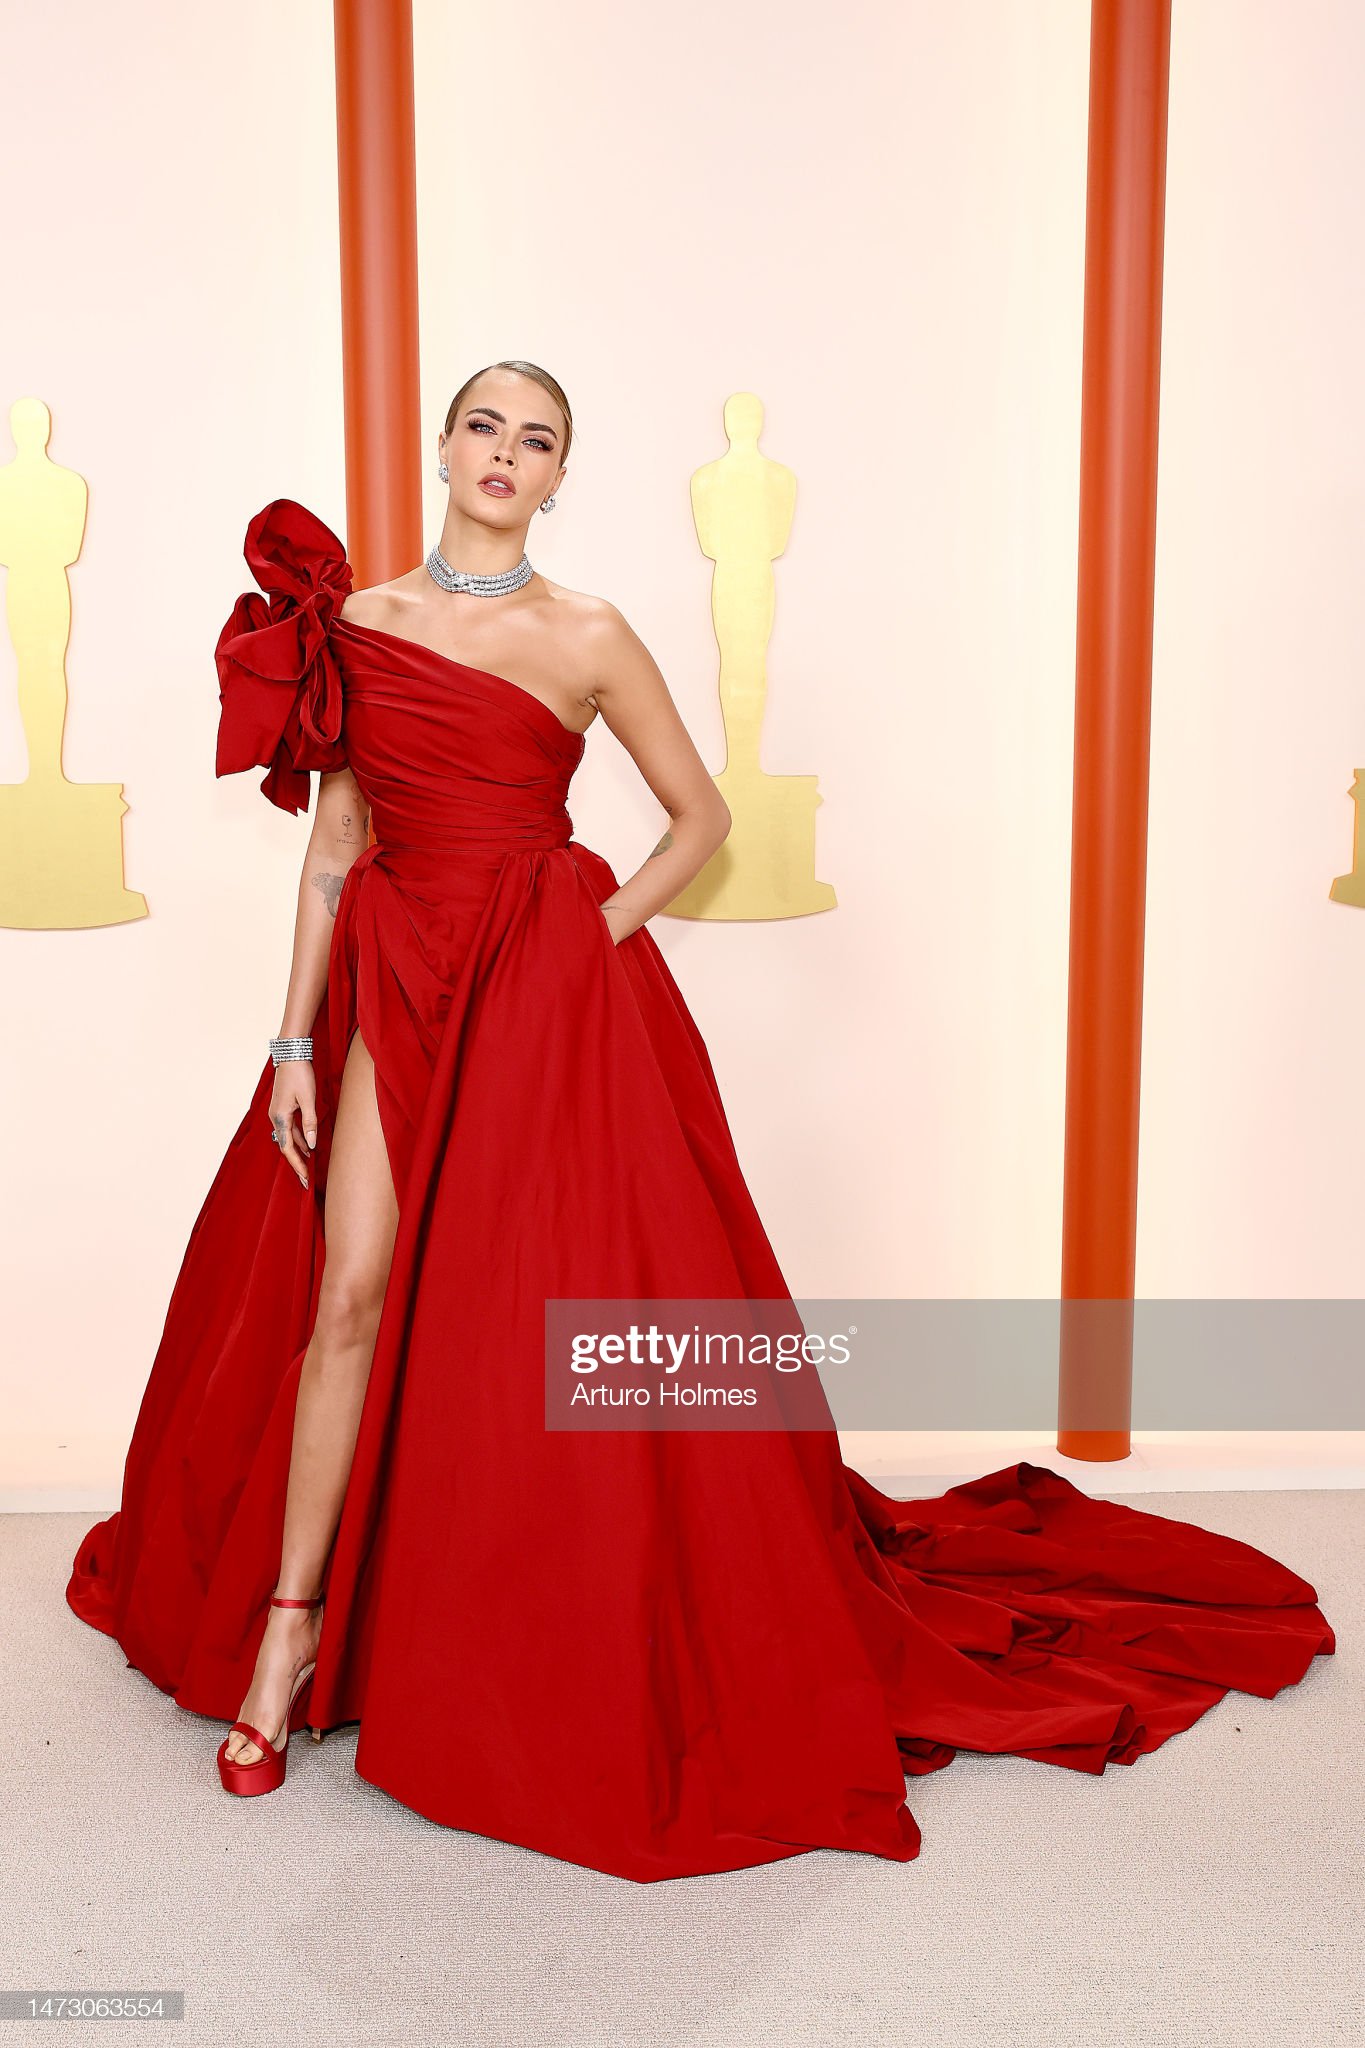 Mỹ nhân Oscar qua ống kính hung thần Getty Images: Phạm Băng Băng - Cara Delevingne đẹp phát choáng, Lady Gaga hóa thảm họa - Ảnh 9.